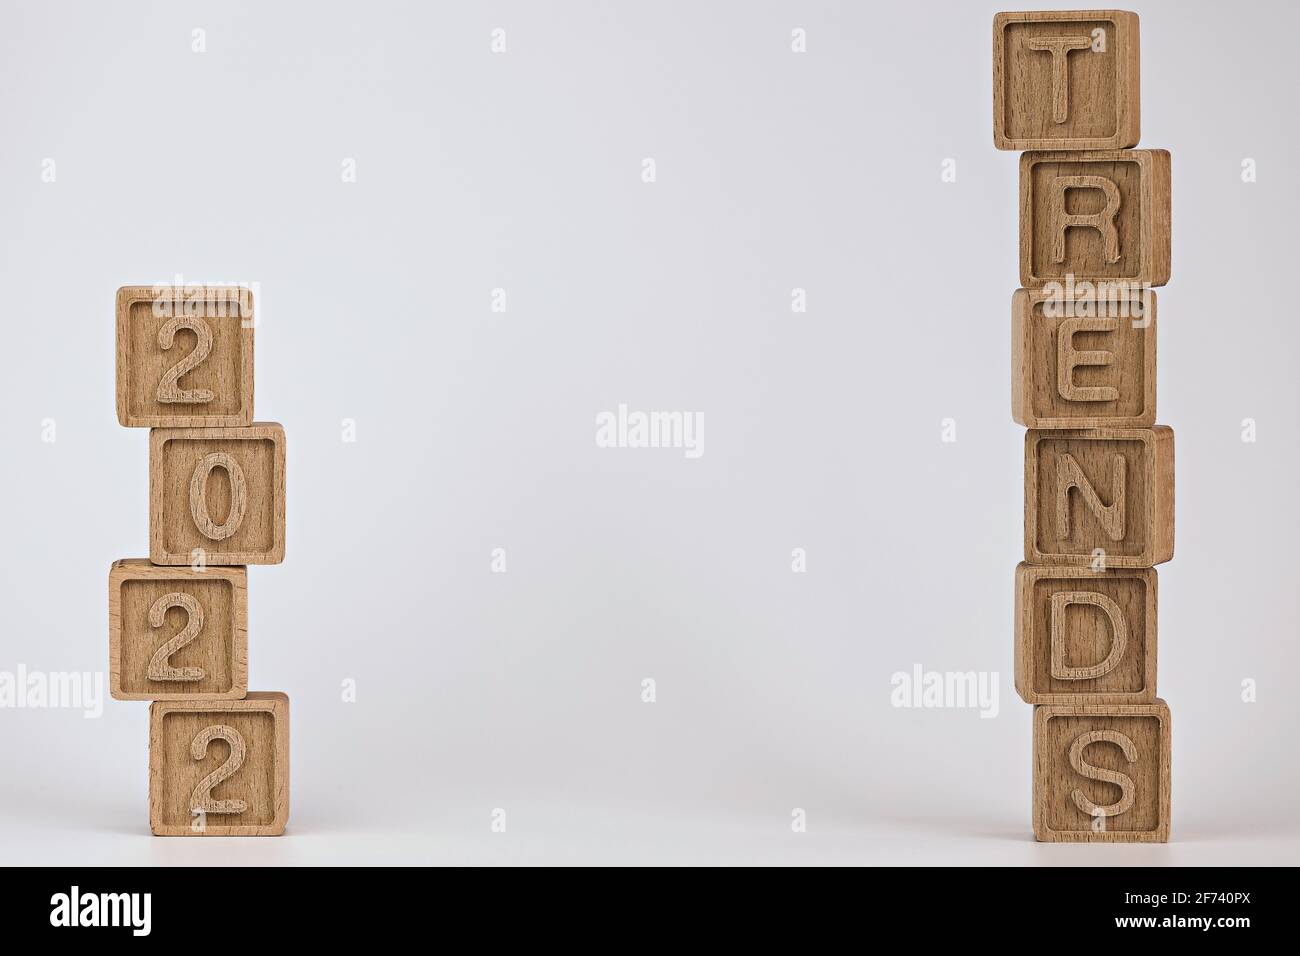 foto sul tema delle tendenze. cubi di legno con la parola 'tendenze' e numeri '2022', su sfondo bianco. foto con spazio per il testo Foto Stock